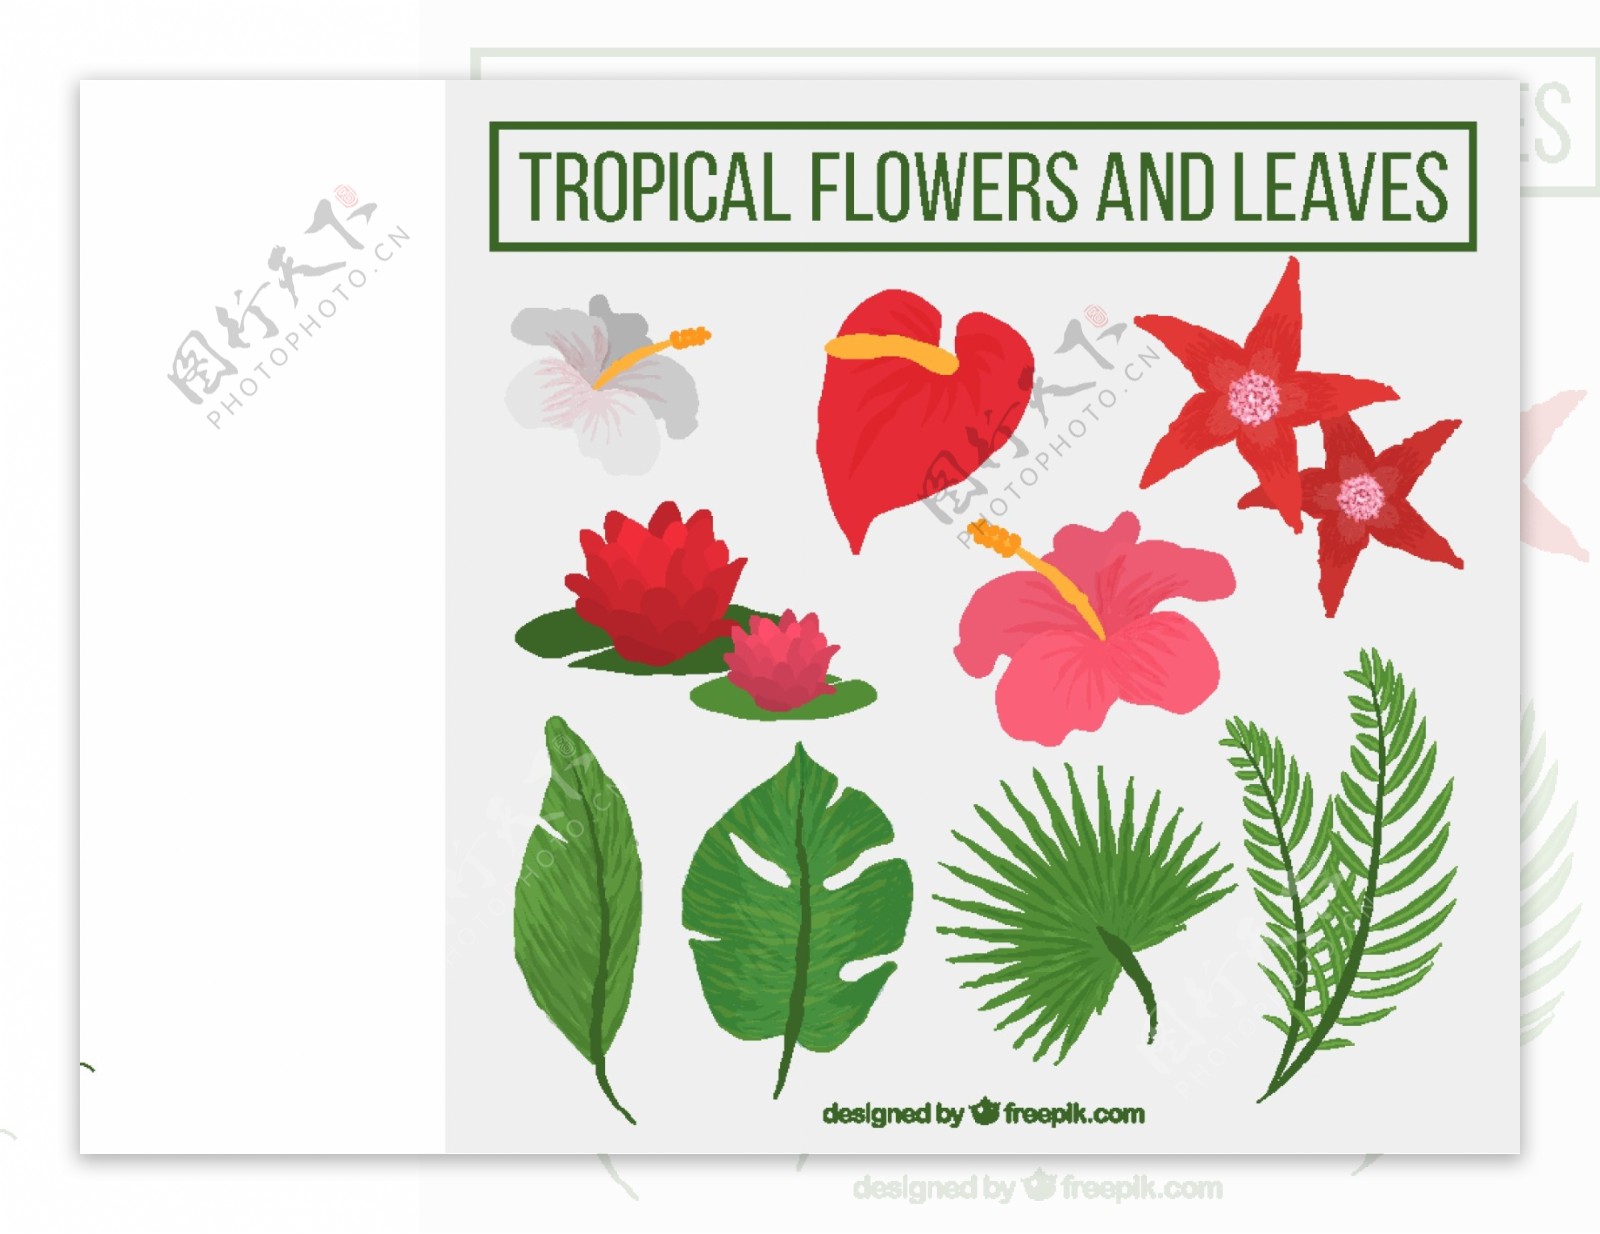 手工绘制热带花卉和植物